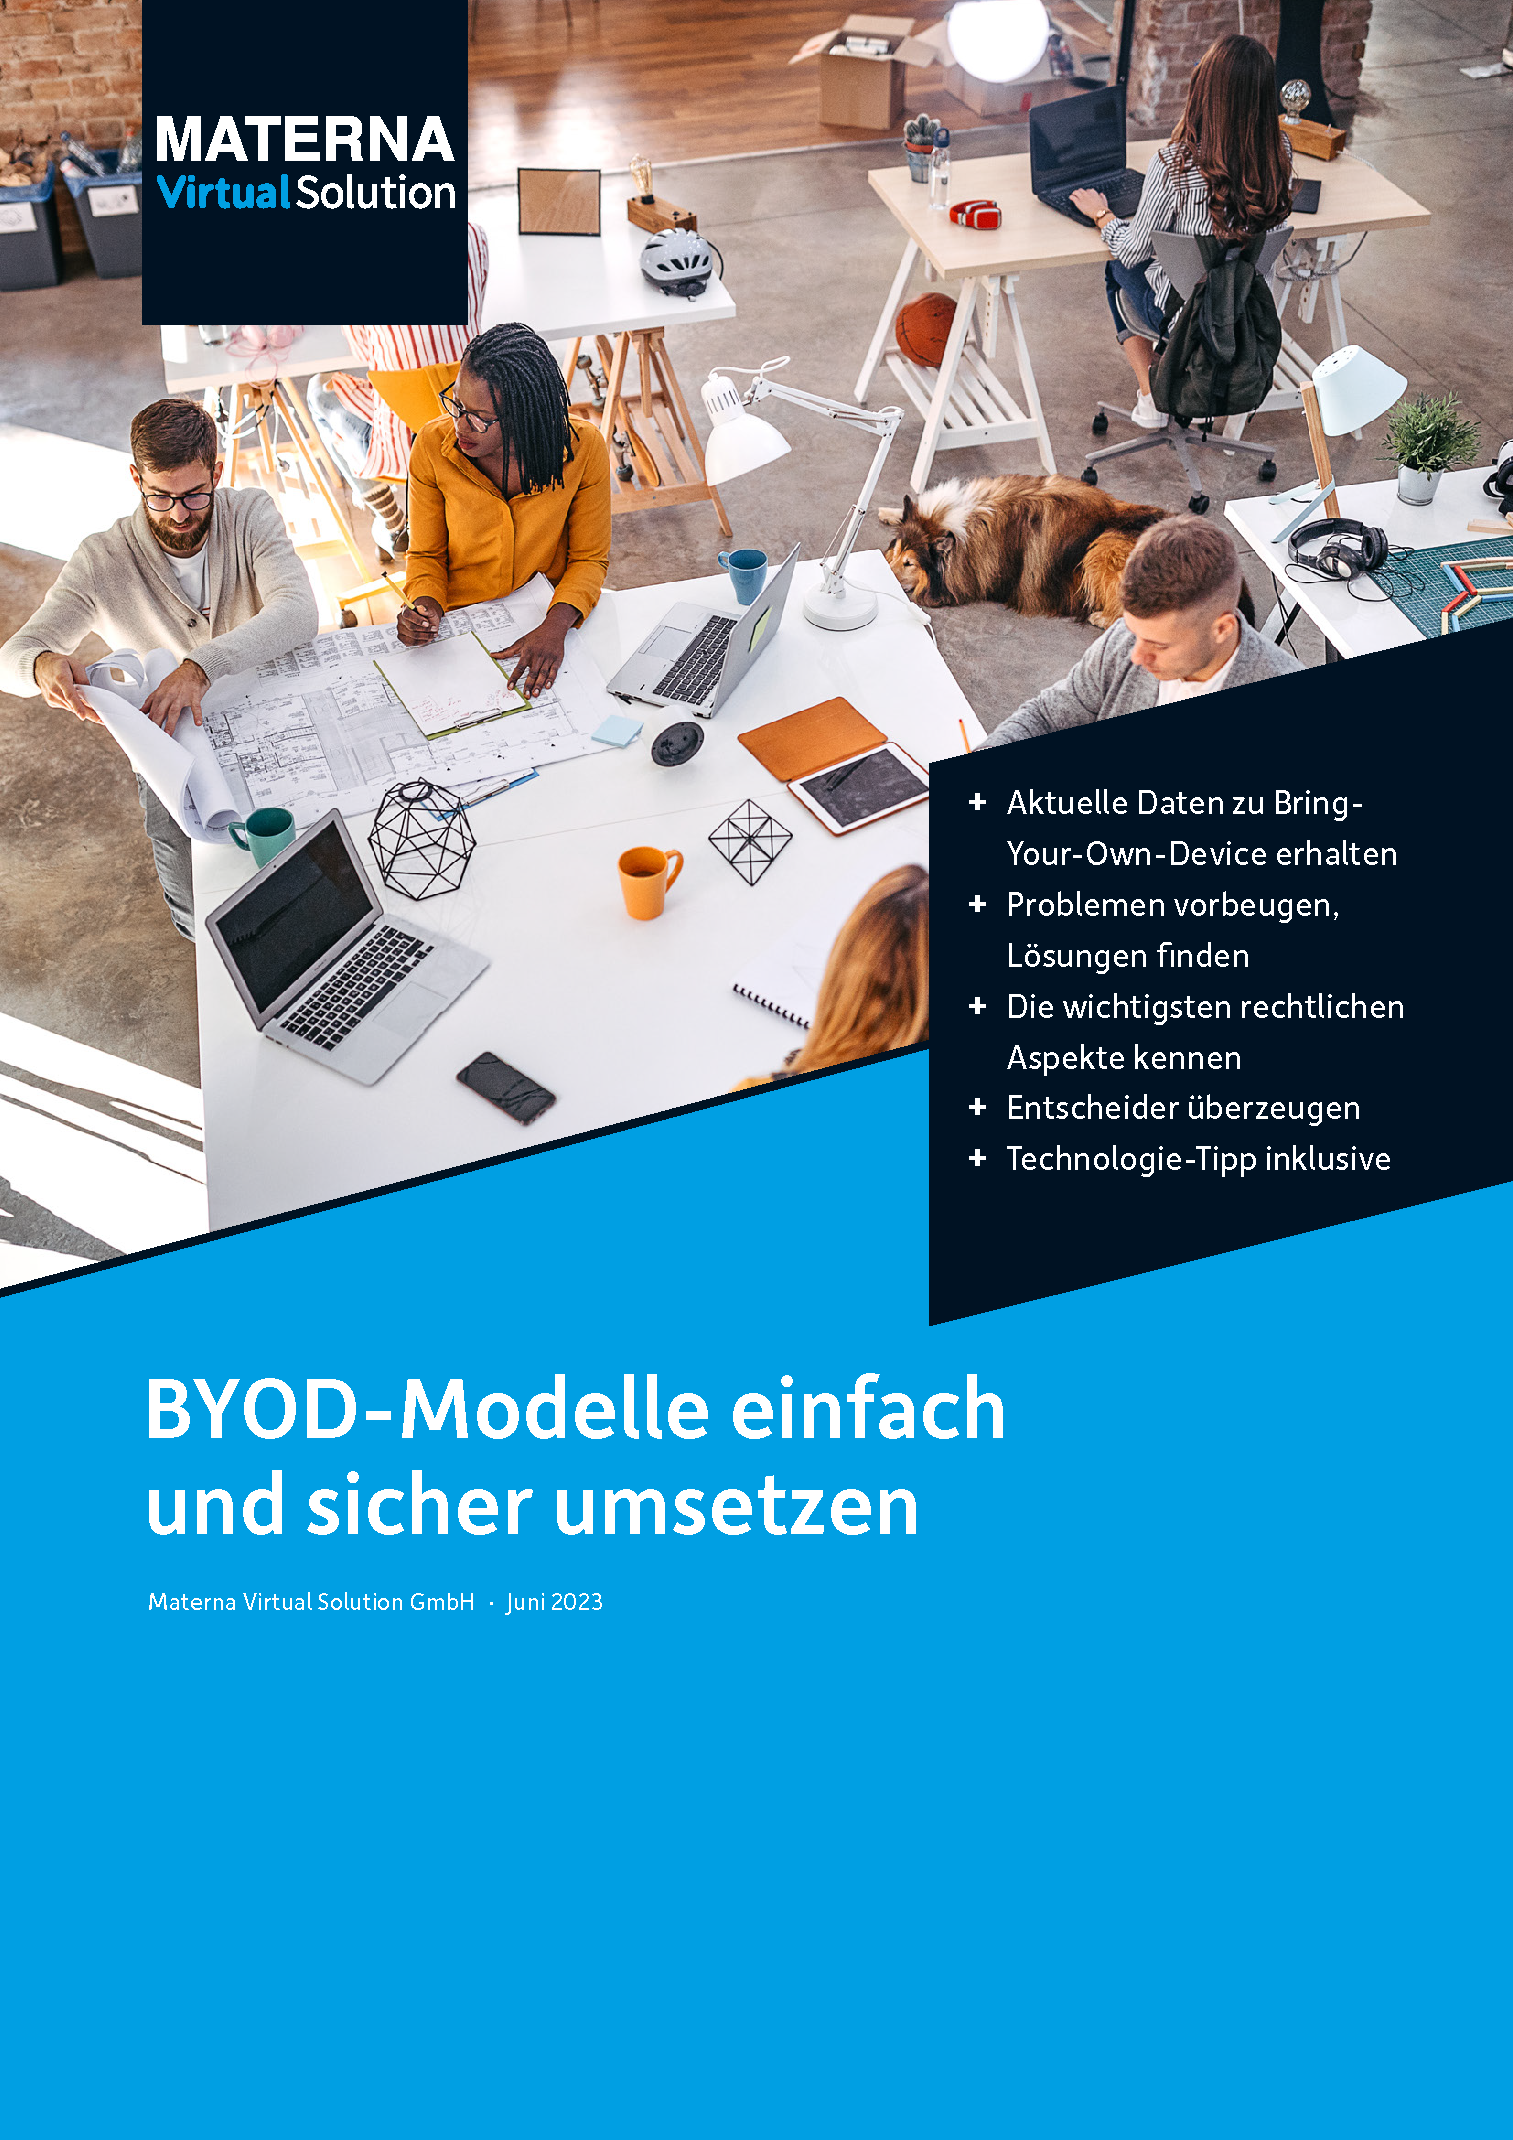 Whitepaper "BYOD-Modelle einfach und sicher umsetzen"